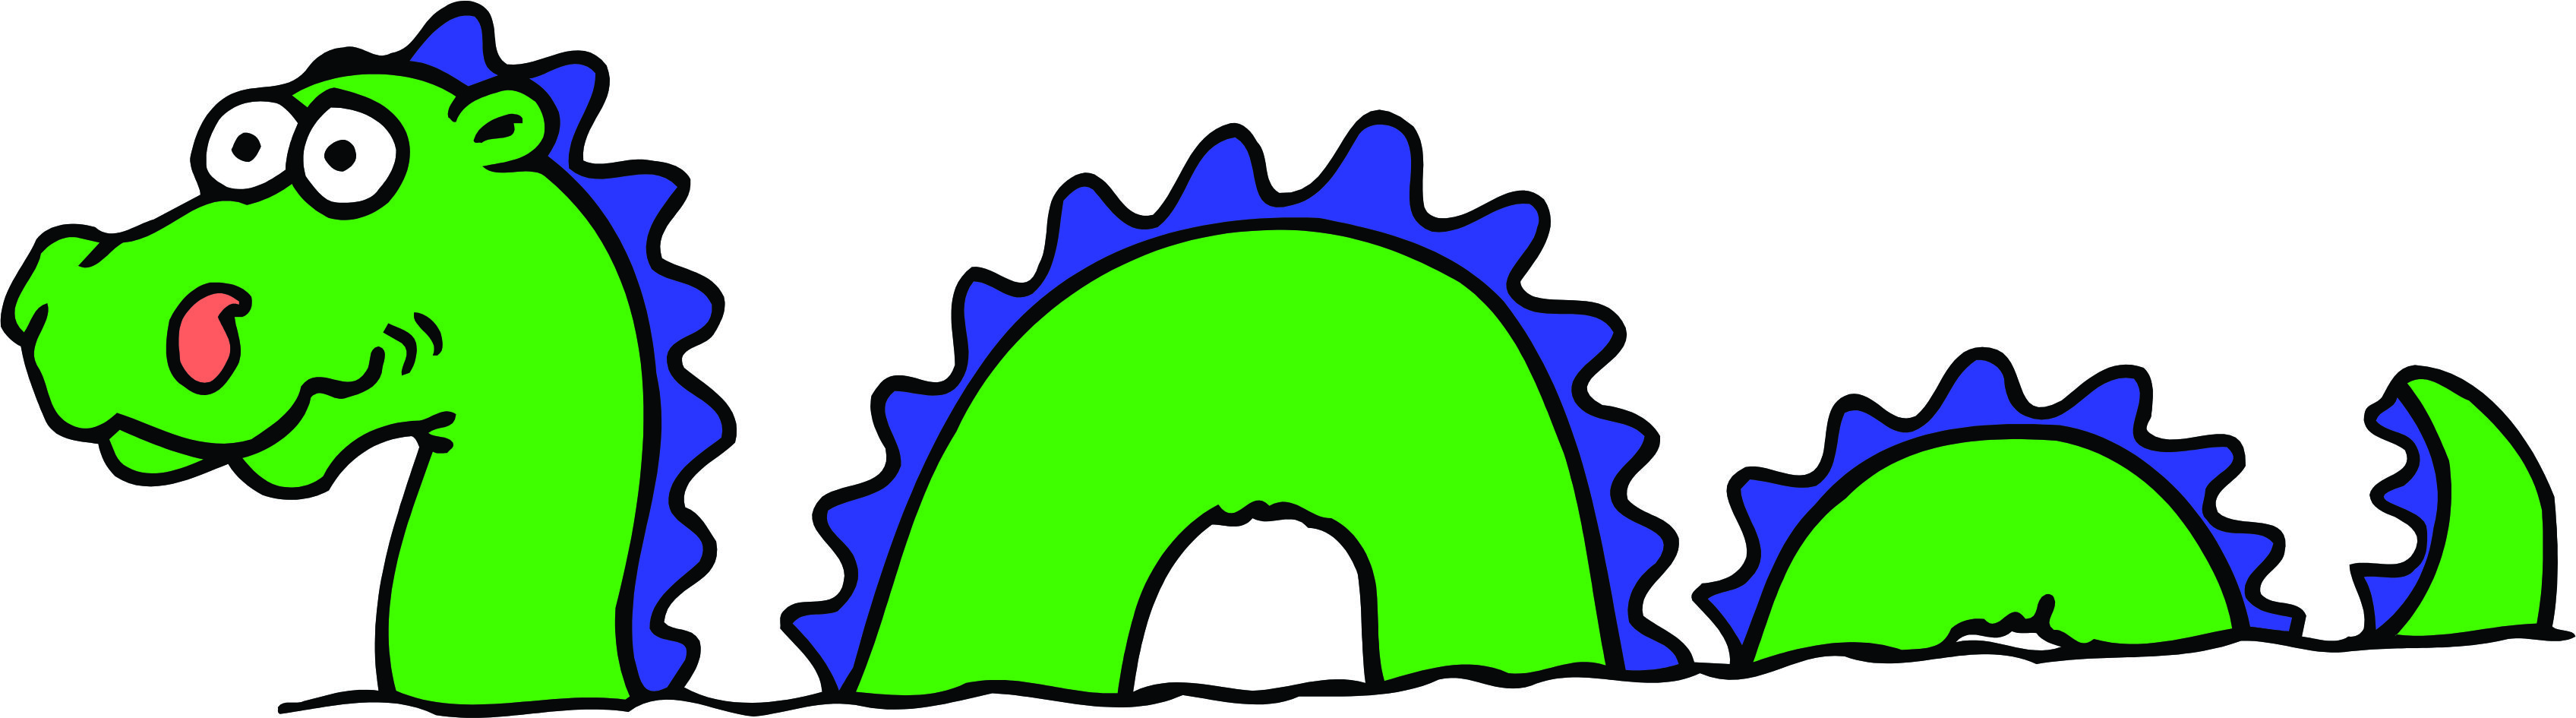 Loch Ness Monster Cartoon